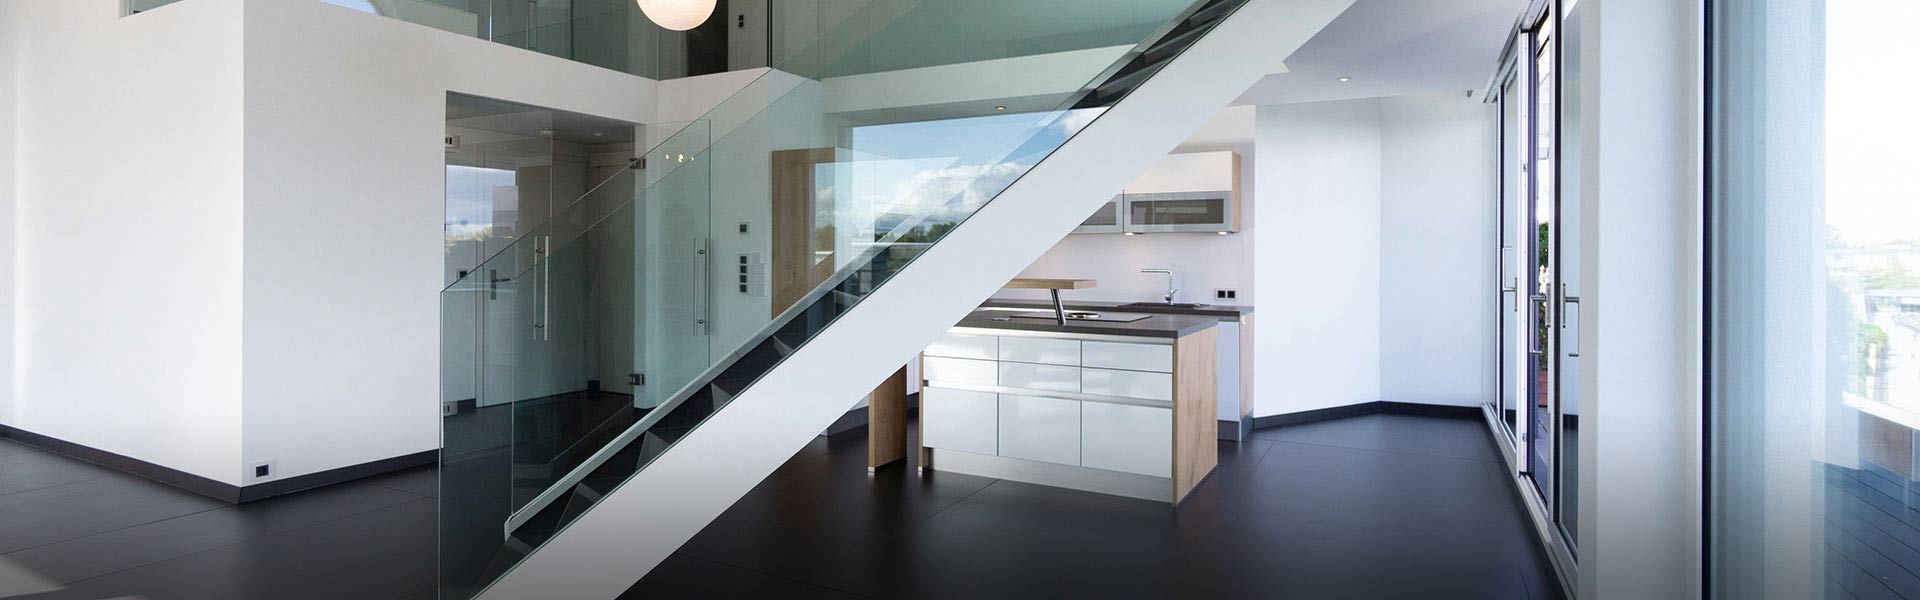 moderne Wohnung mit Treppe